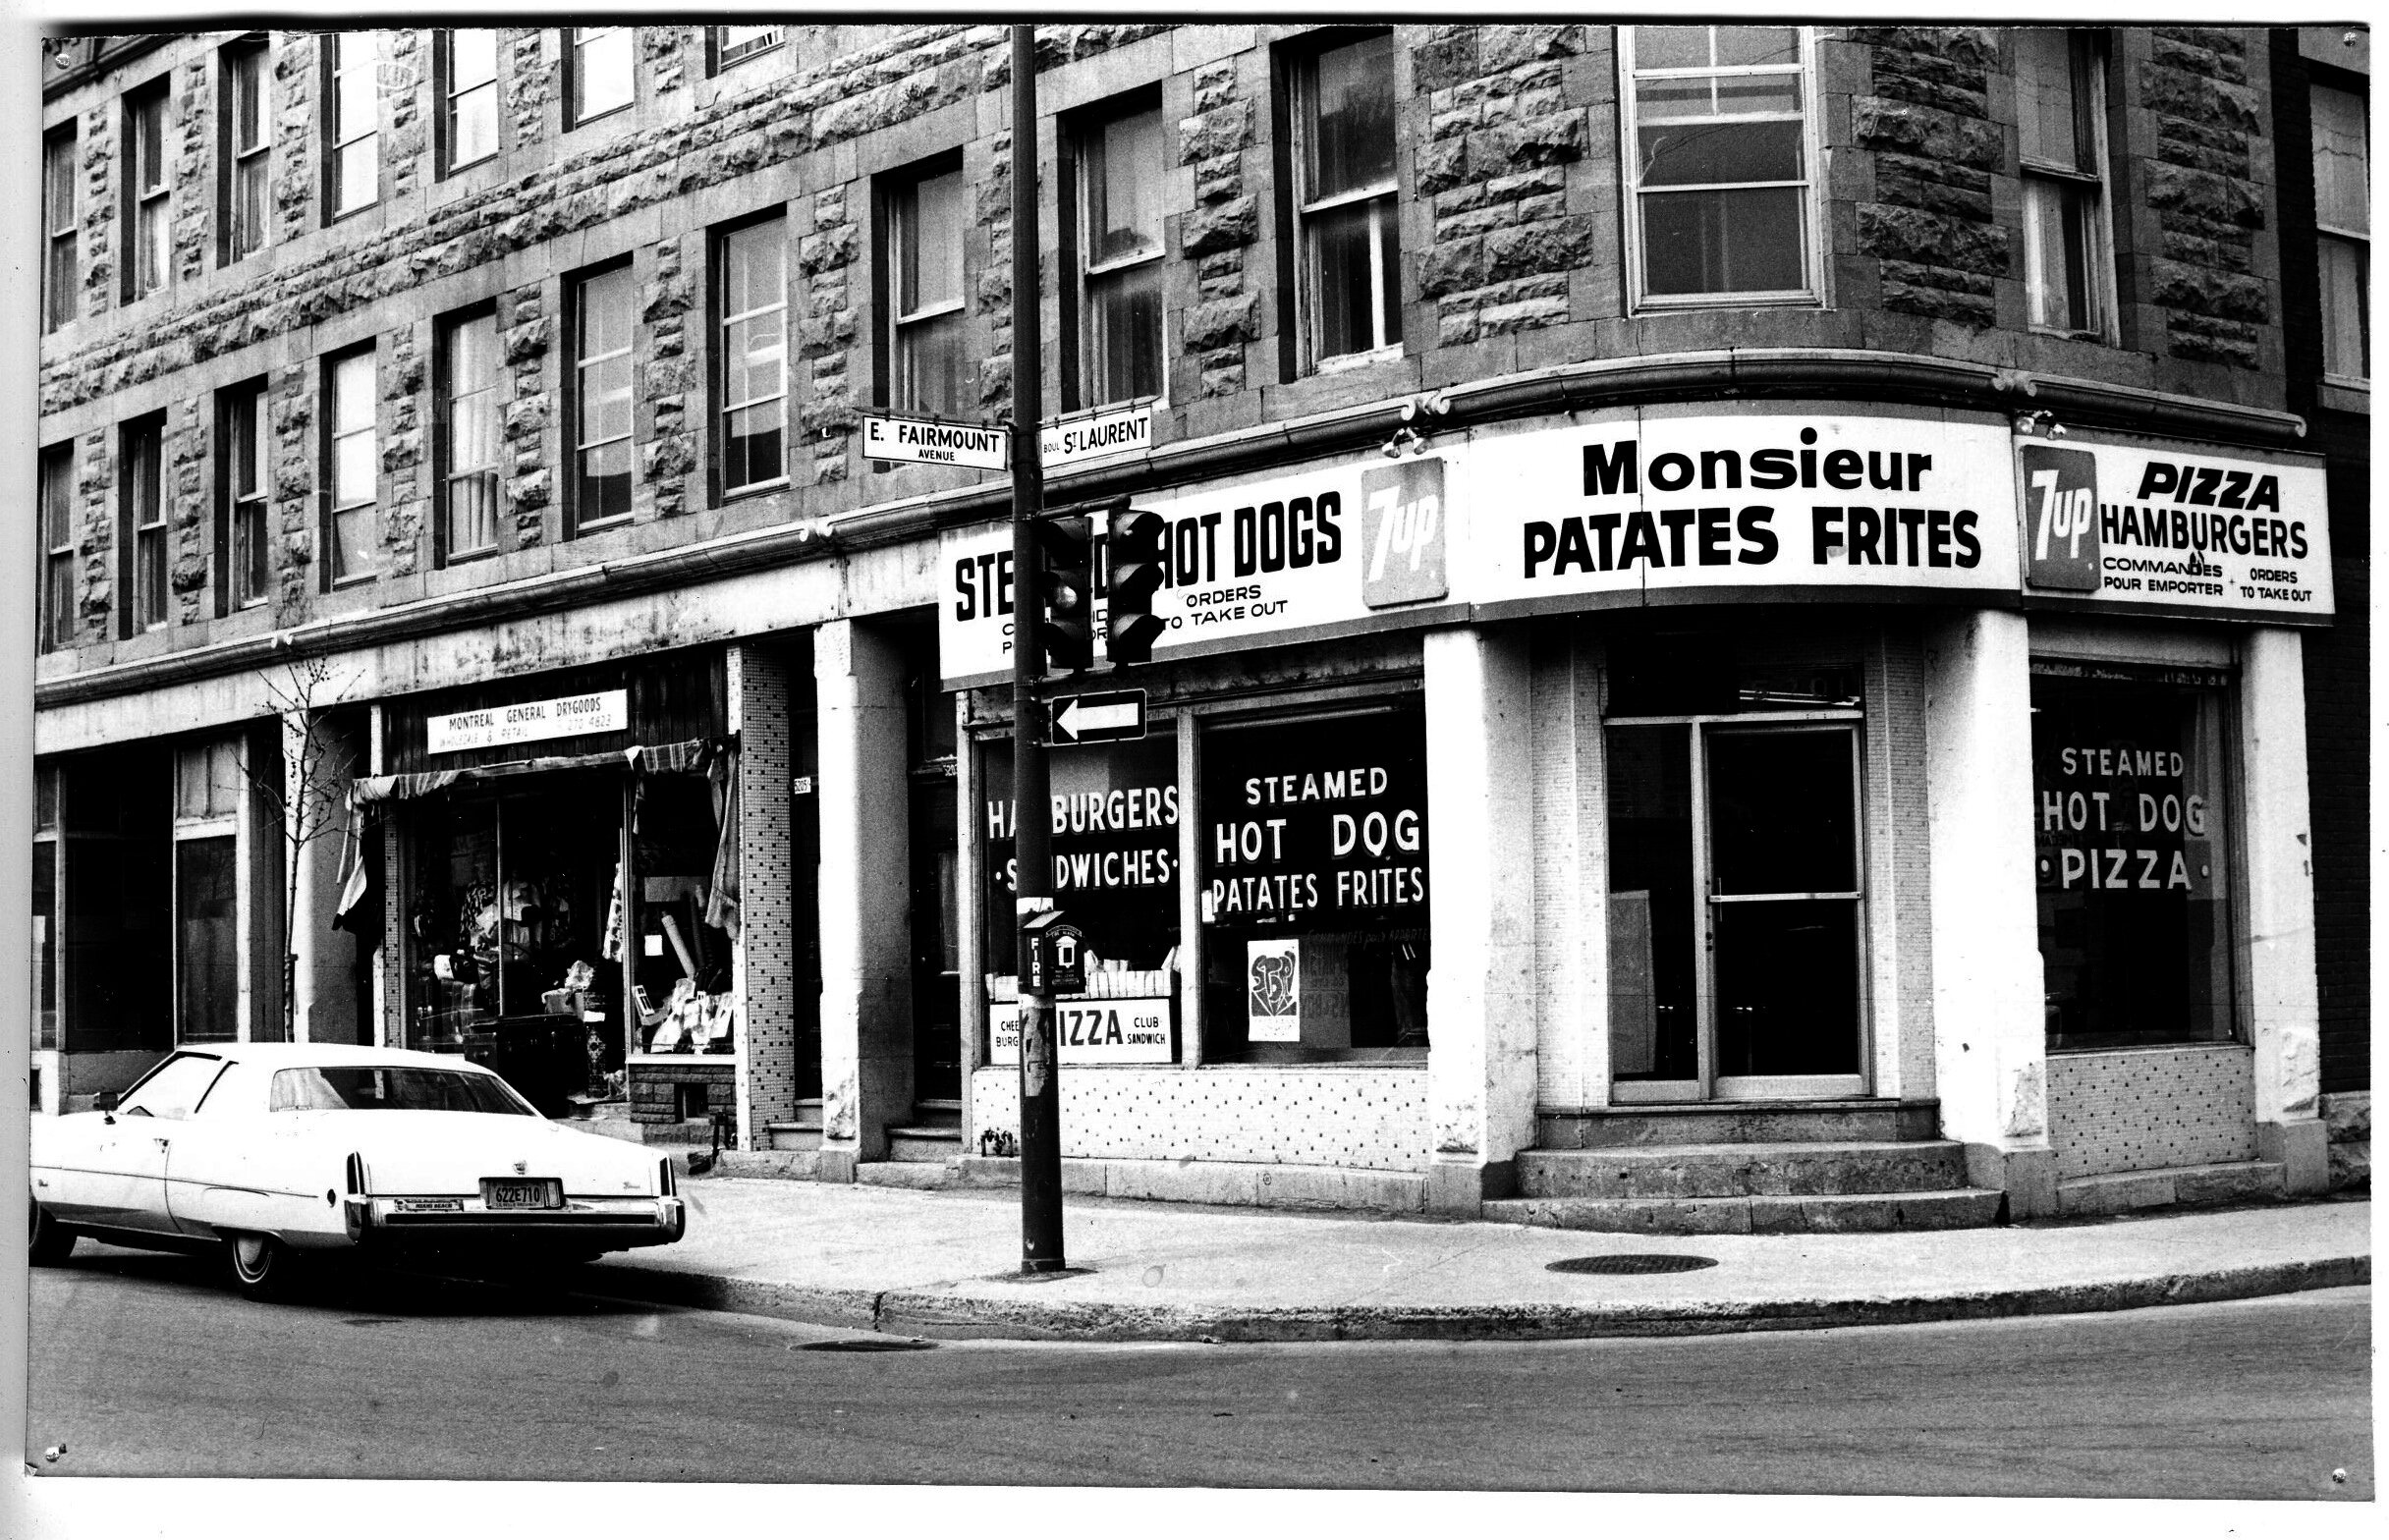 Monsieur Patates Frites, Montreal, 1973